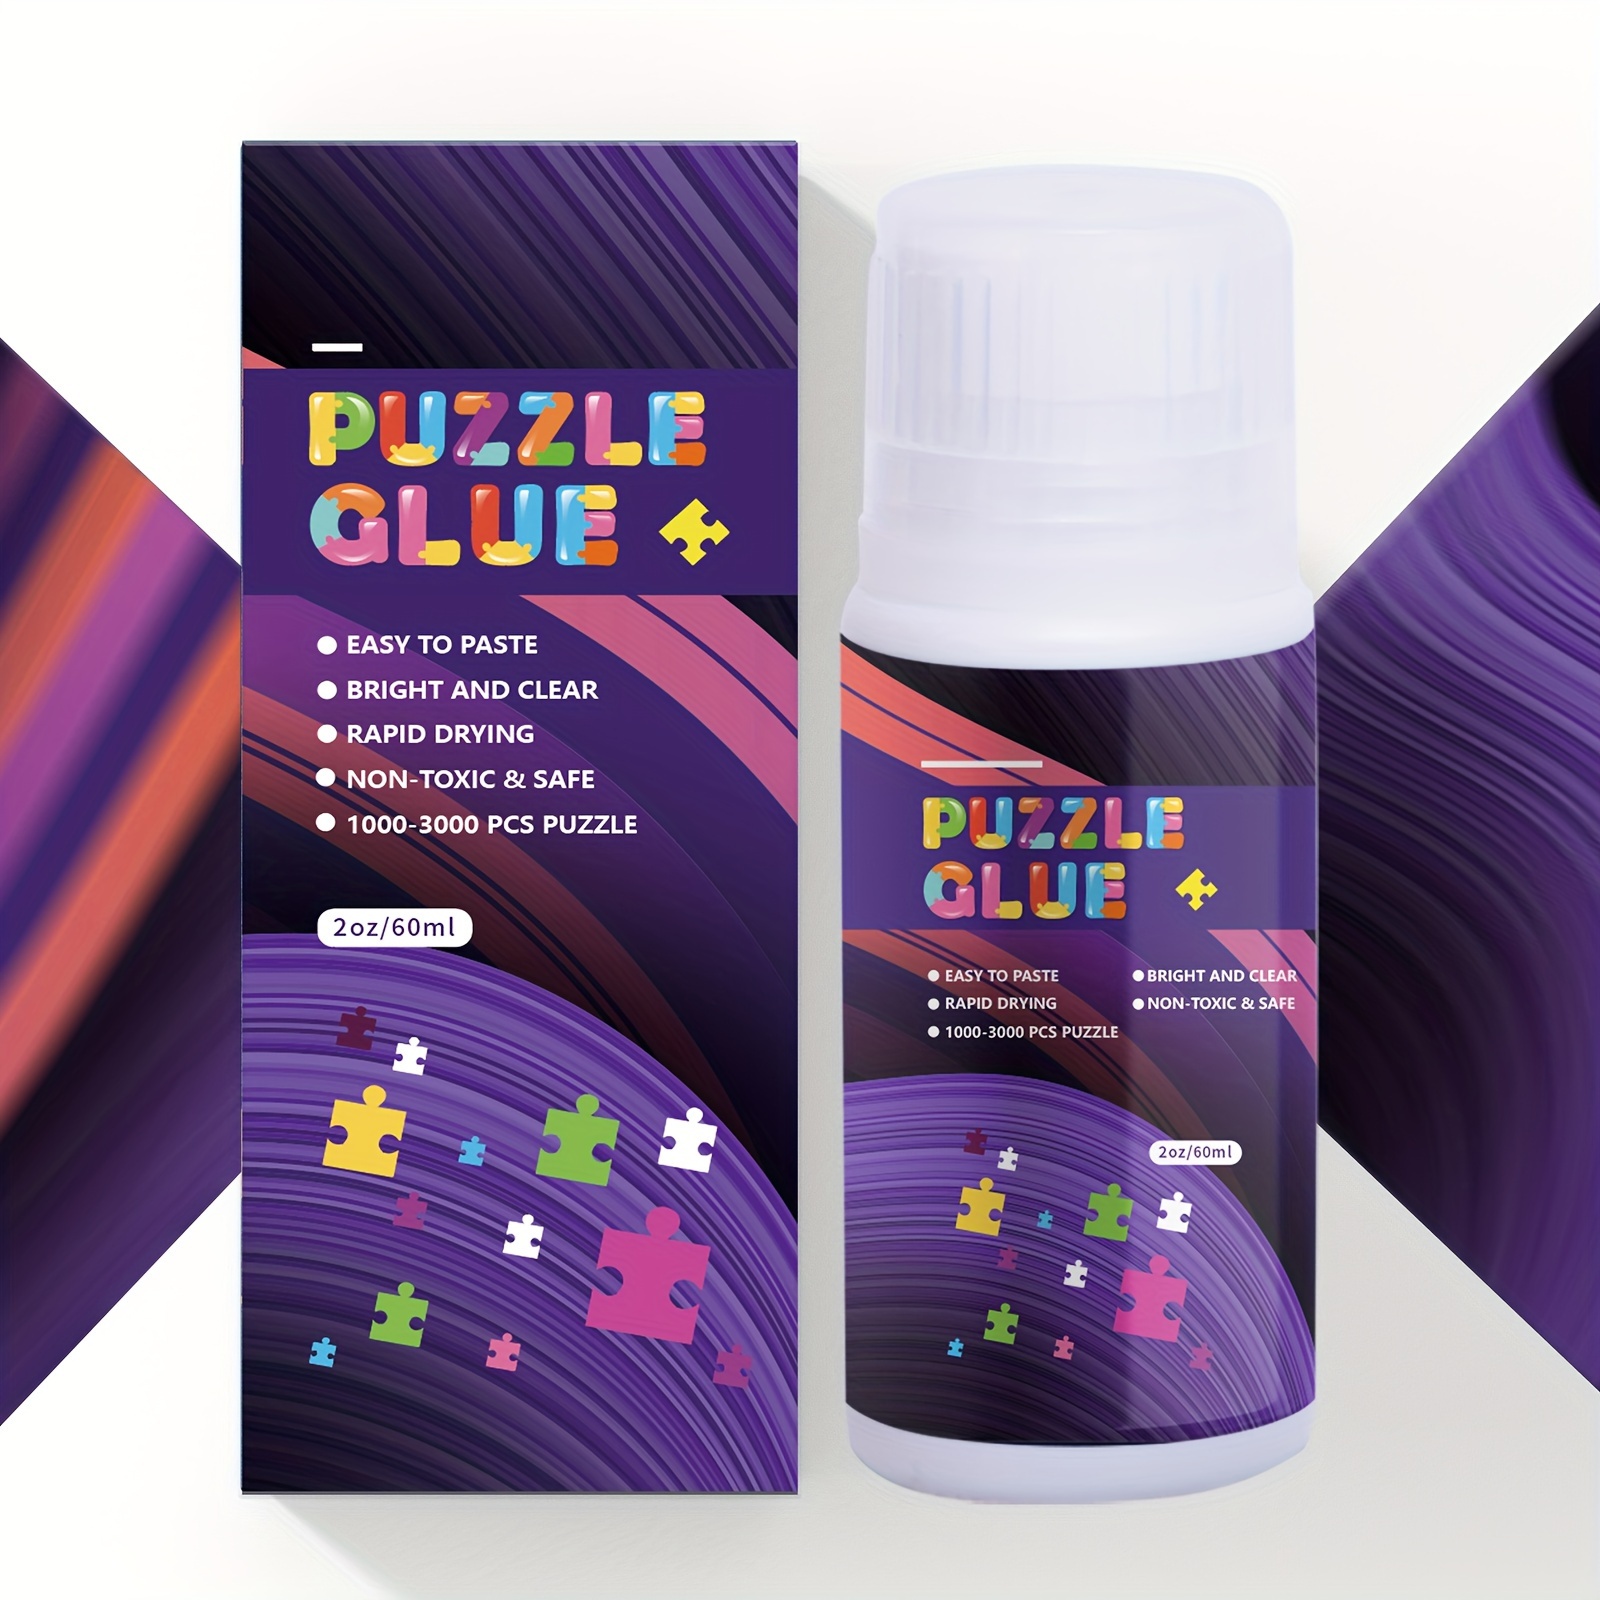 Puzzle Saver Glue